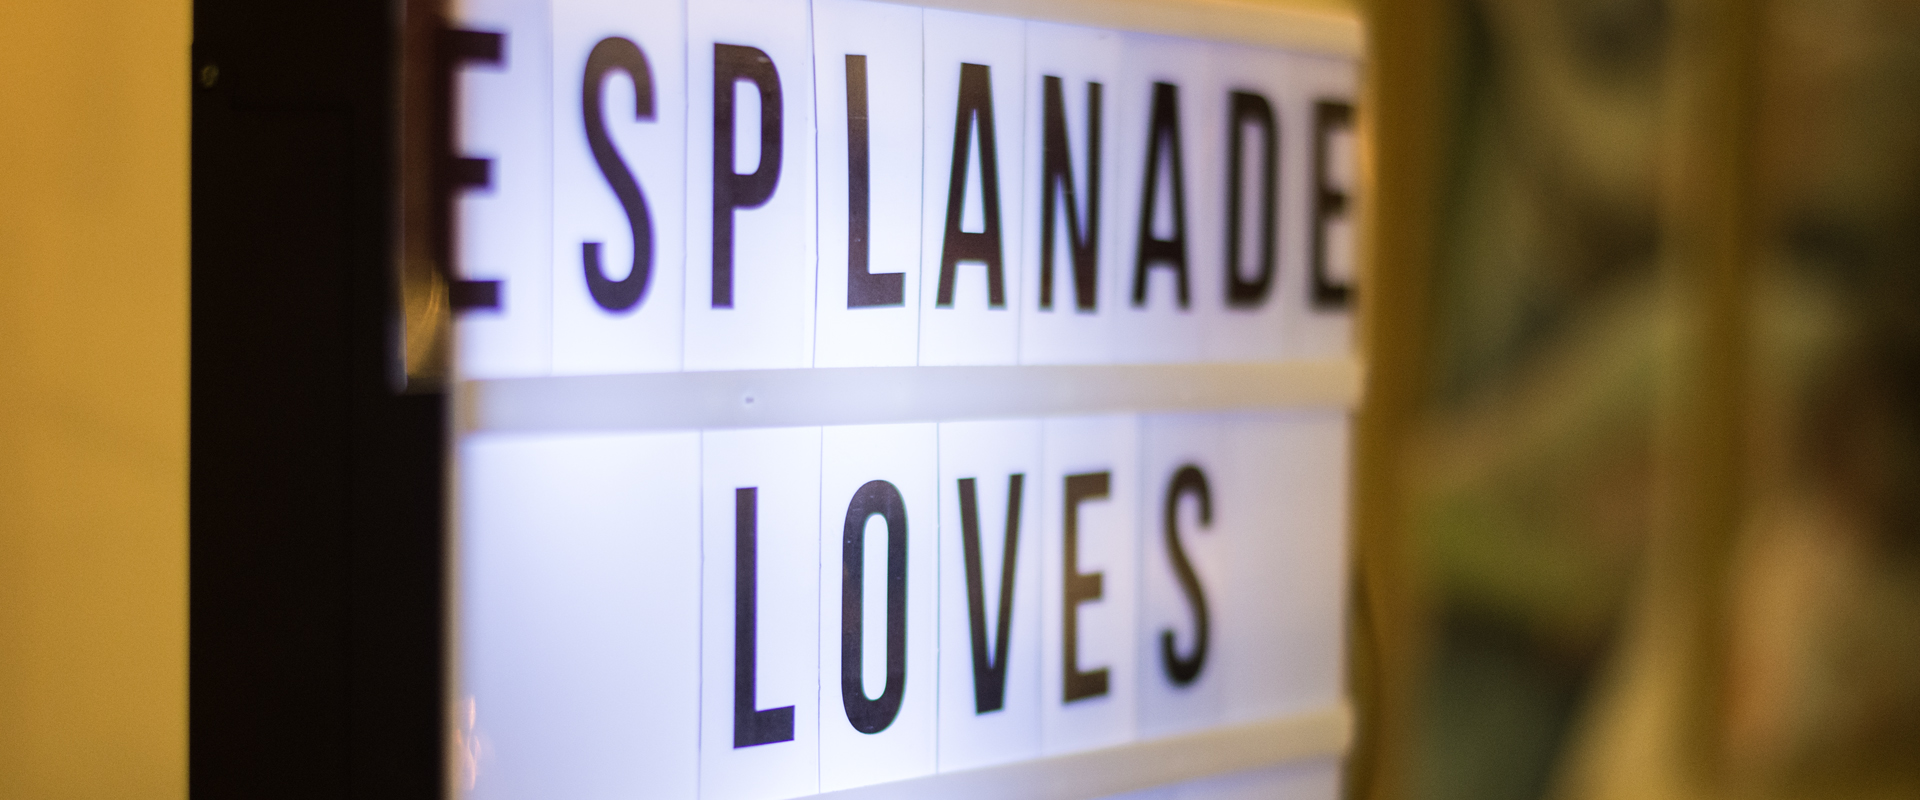 Esplanade loves you as written text